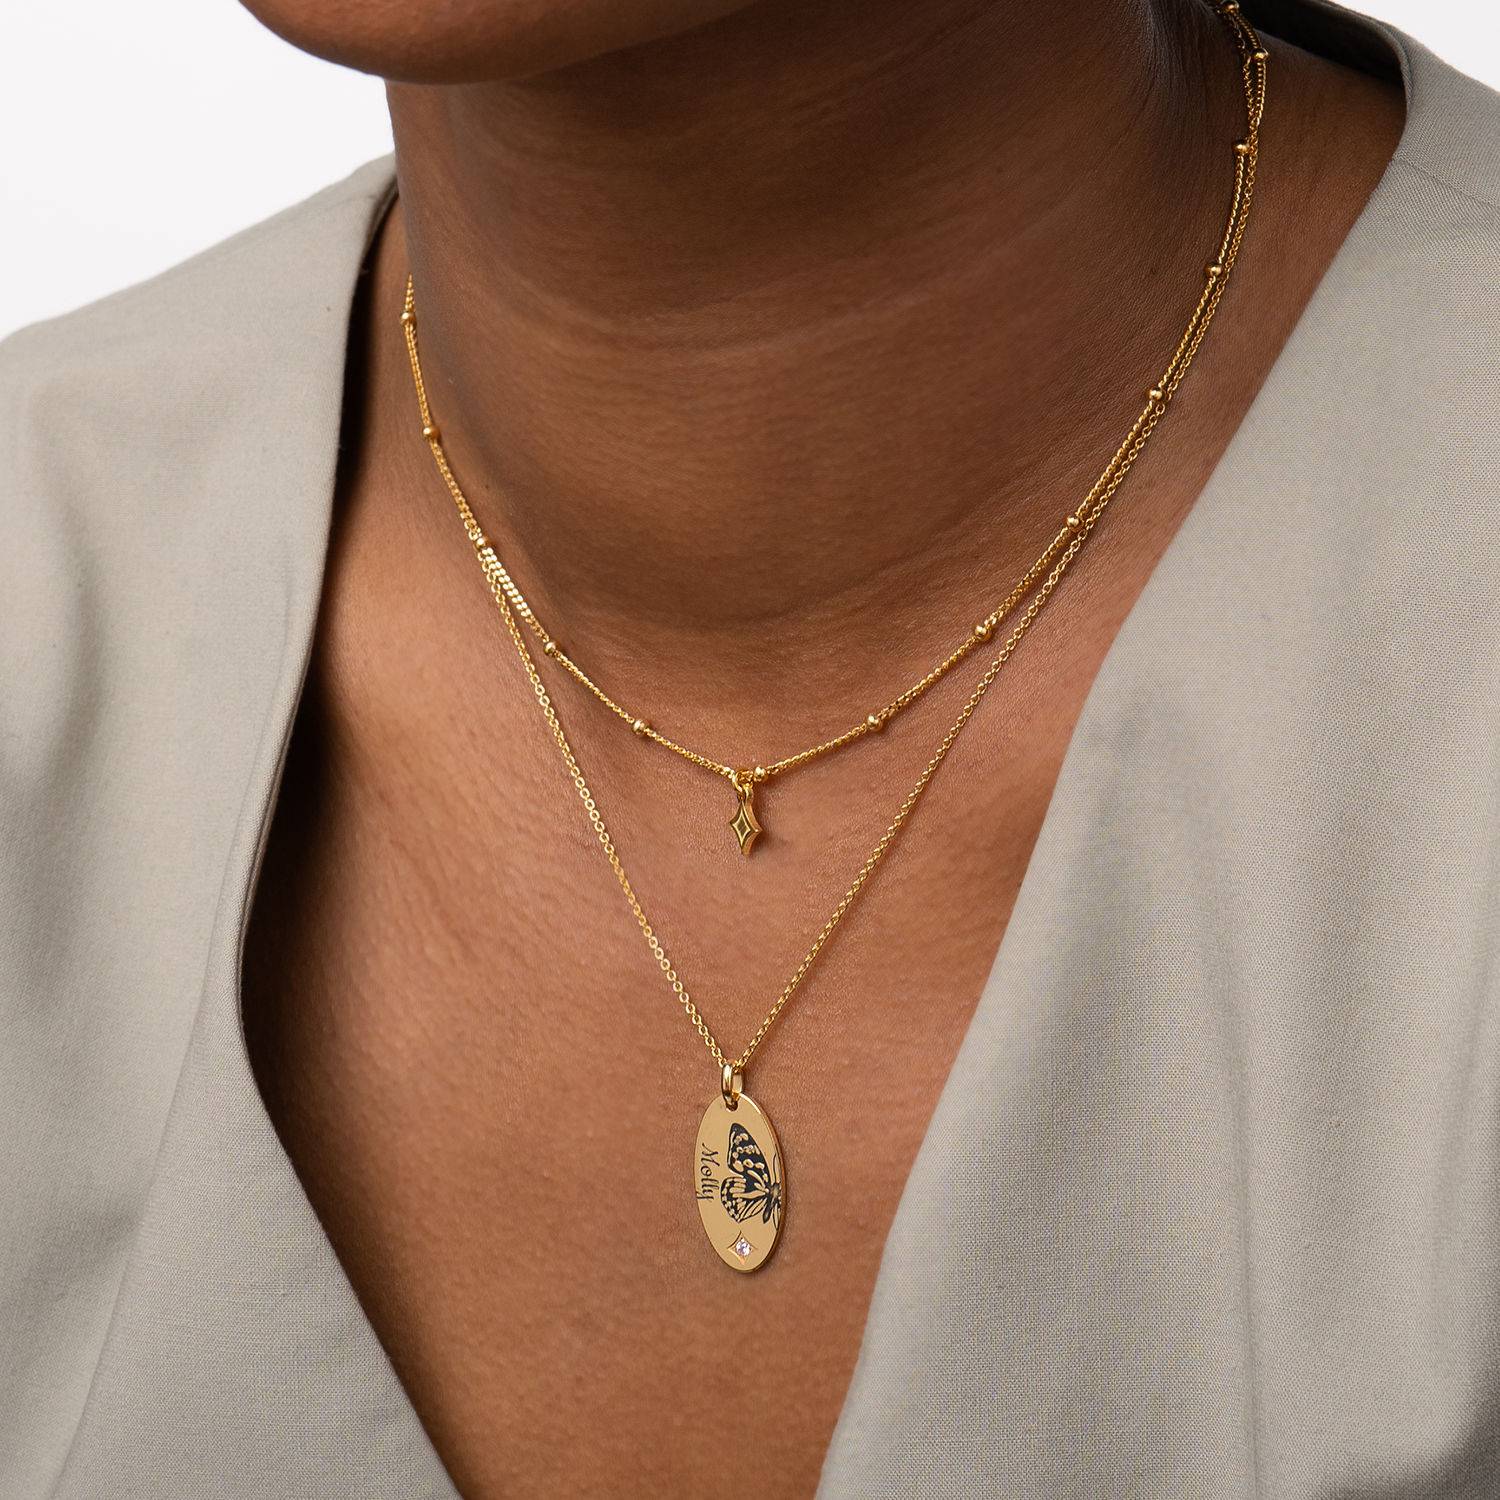 Gelaagde halsketting met geboortevlinder en -steen in 18k goud vermeil-2 Productfoto